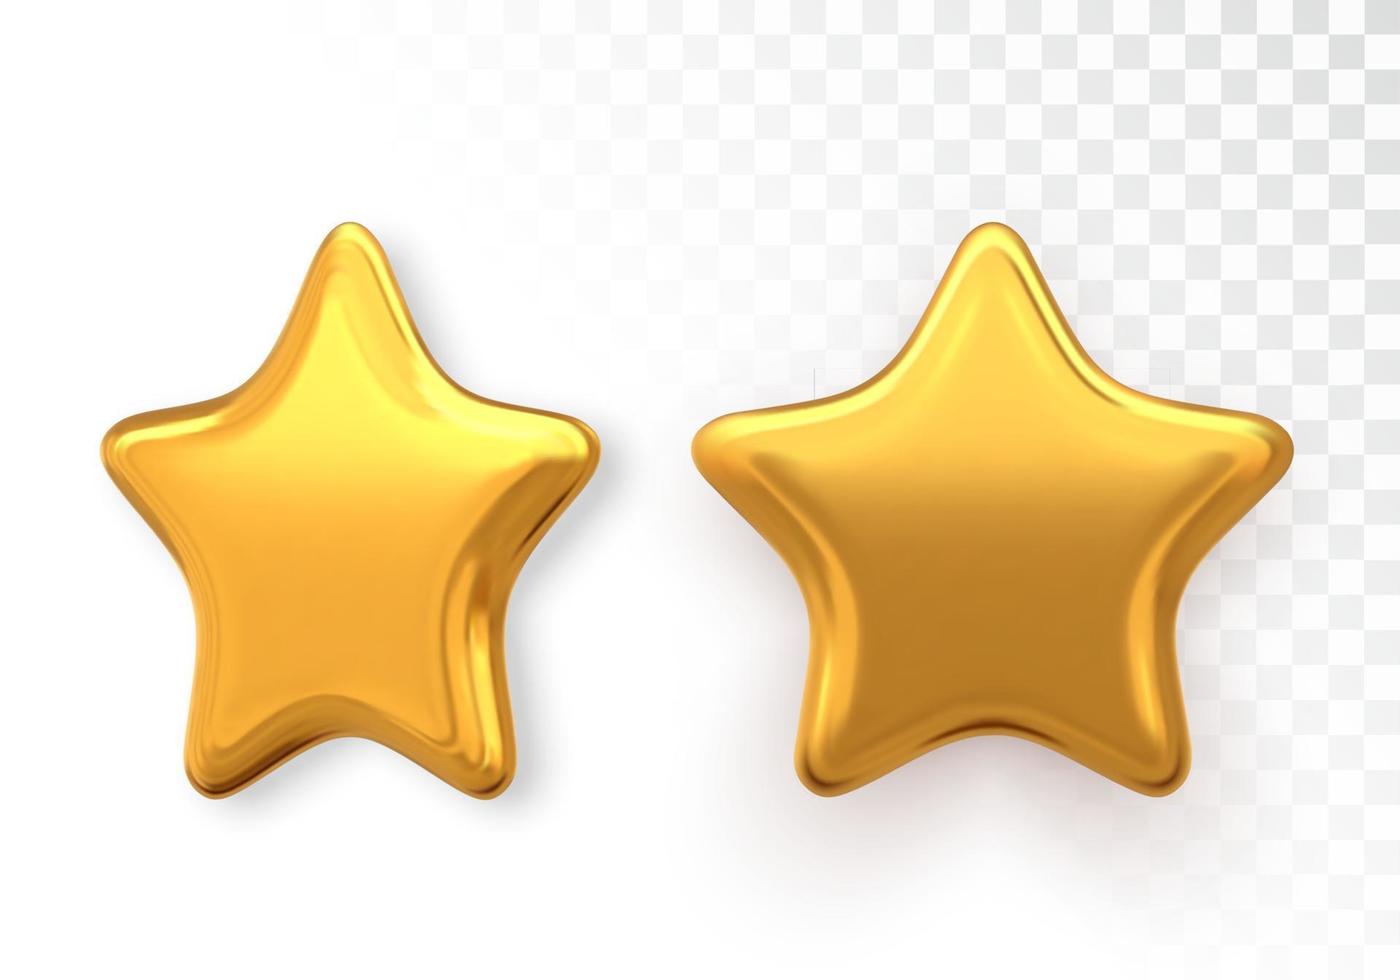 étoiles 3d métalliques dorées isolées sur fond transparent. décoration de noël réaliste. illustration vectorielle. vecteur